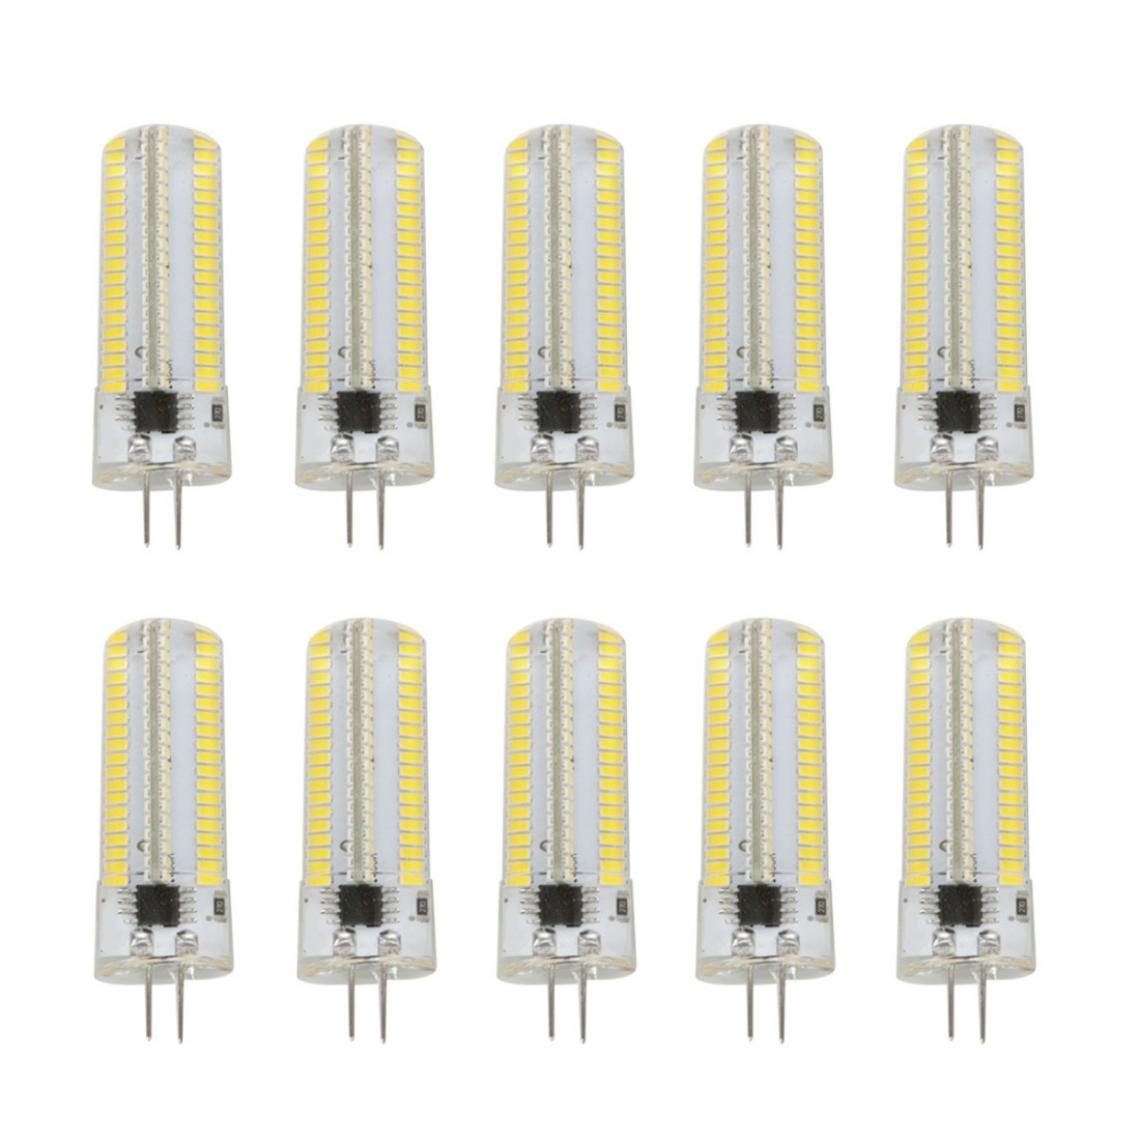 Wewoo - 10 PCS G4 7W 152 LED 3014 SMD 600-700 LM ampoules de maïs en silicone à intensité variableblanc chaudCA 220V - Ampoules LED